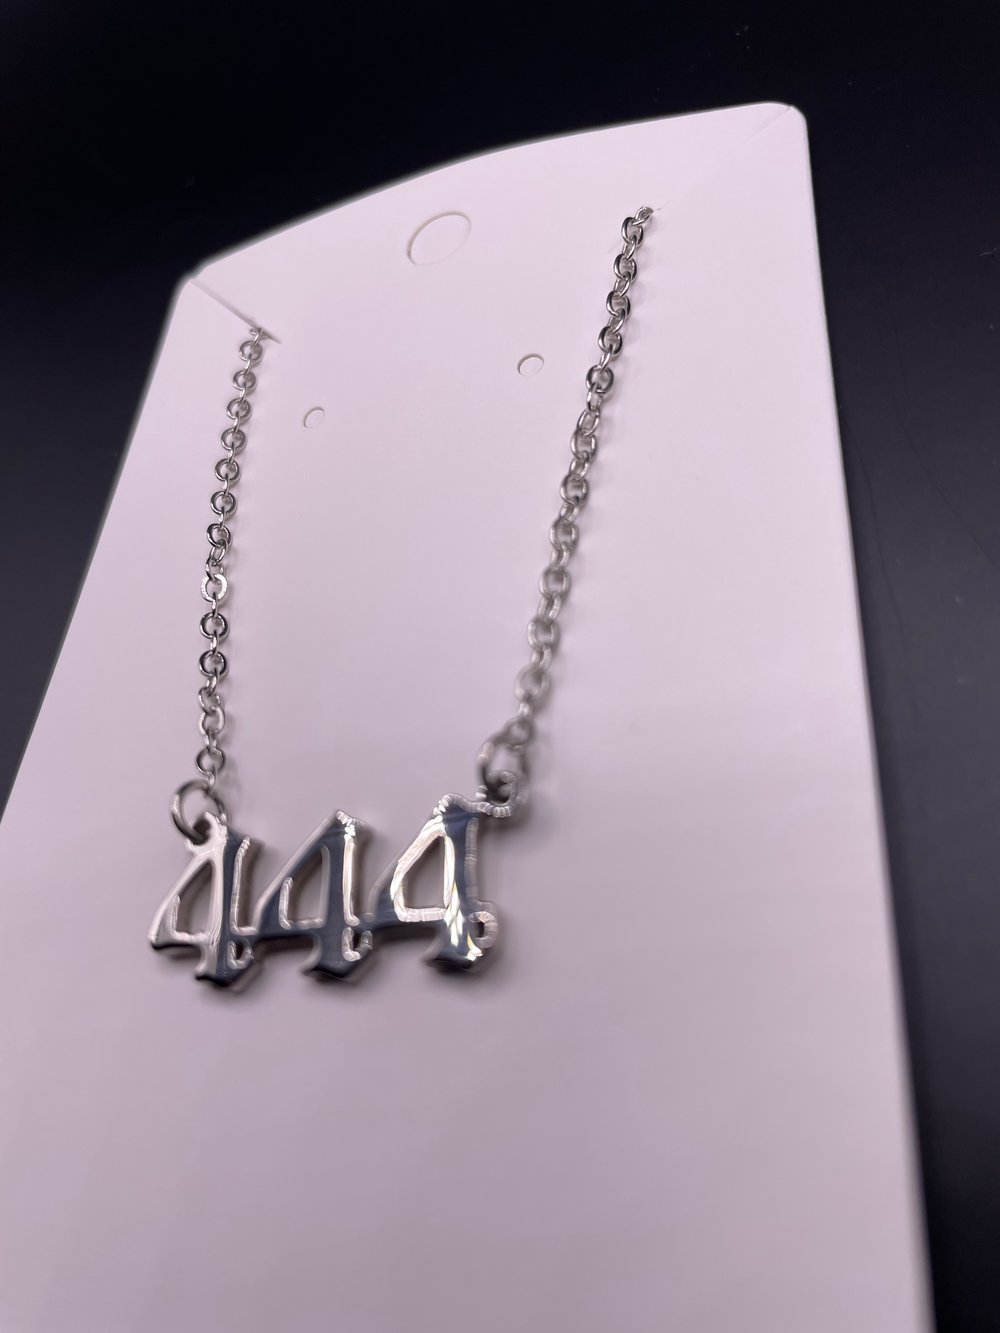 “444” Angel Number Necklace